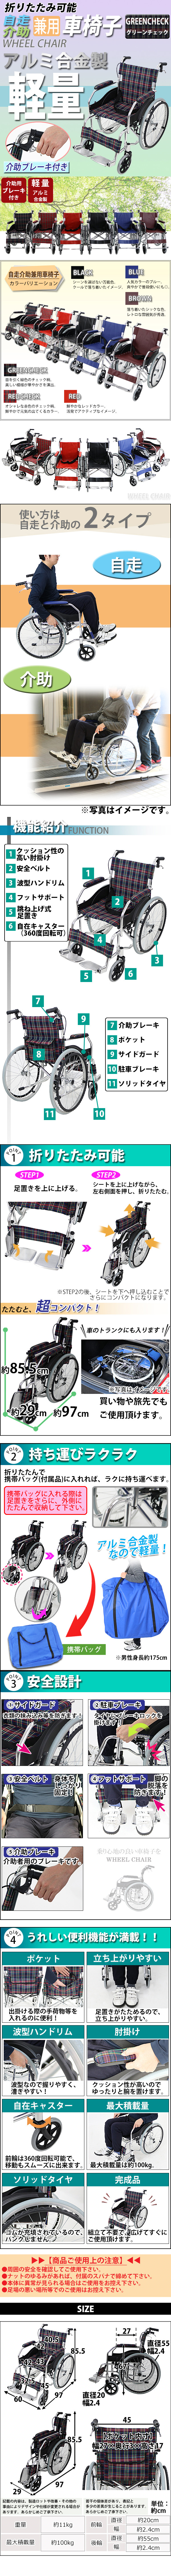 純正人気車椅子 アルミ合金製 約11kg TAISコード取得済 軽量 折り畳み 自走介助兼用 介助ブレーキ付き 携帯バッグ付き ノーパンクタイヤ 自走用